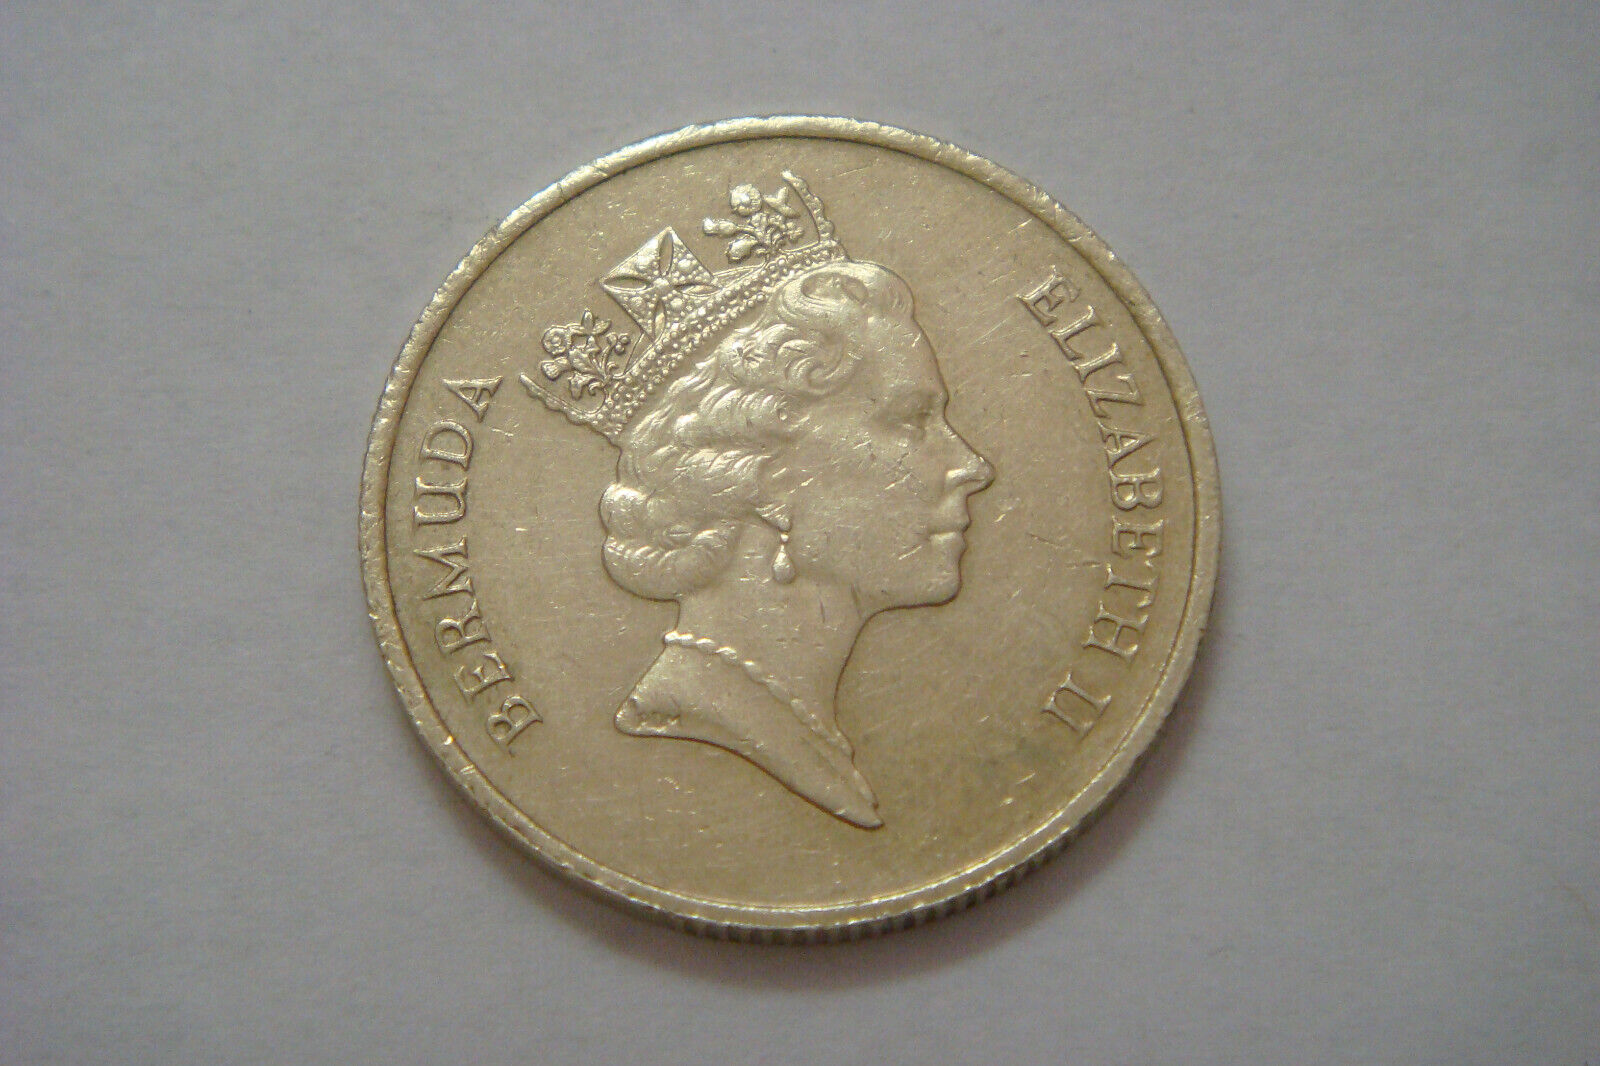 Bermuda  Dollars 1997 SAiL BOAT